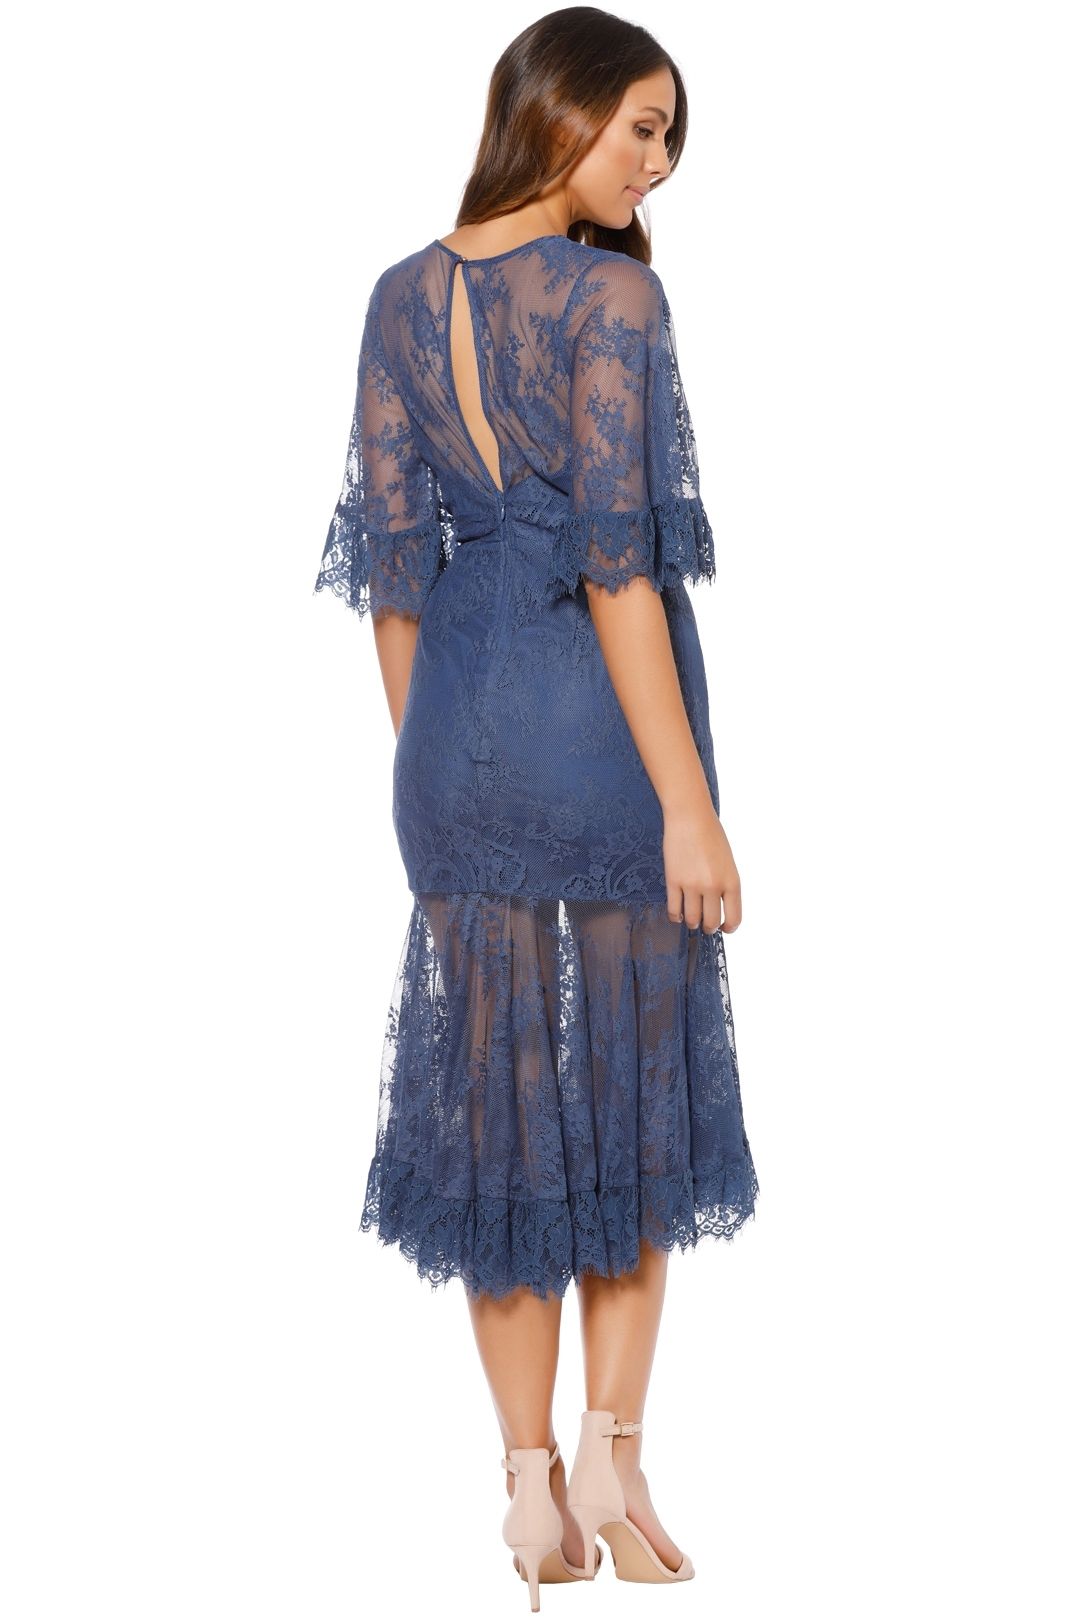 Talulah - Transpire Lace Maxi Dress - Blue - Back